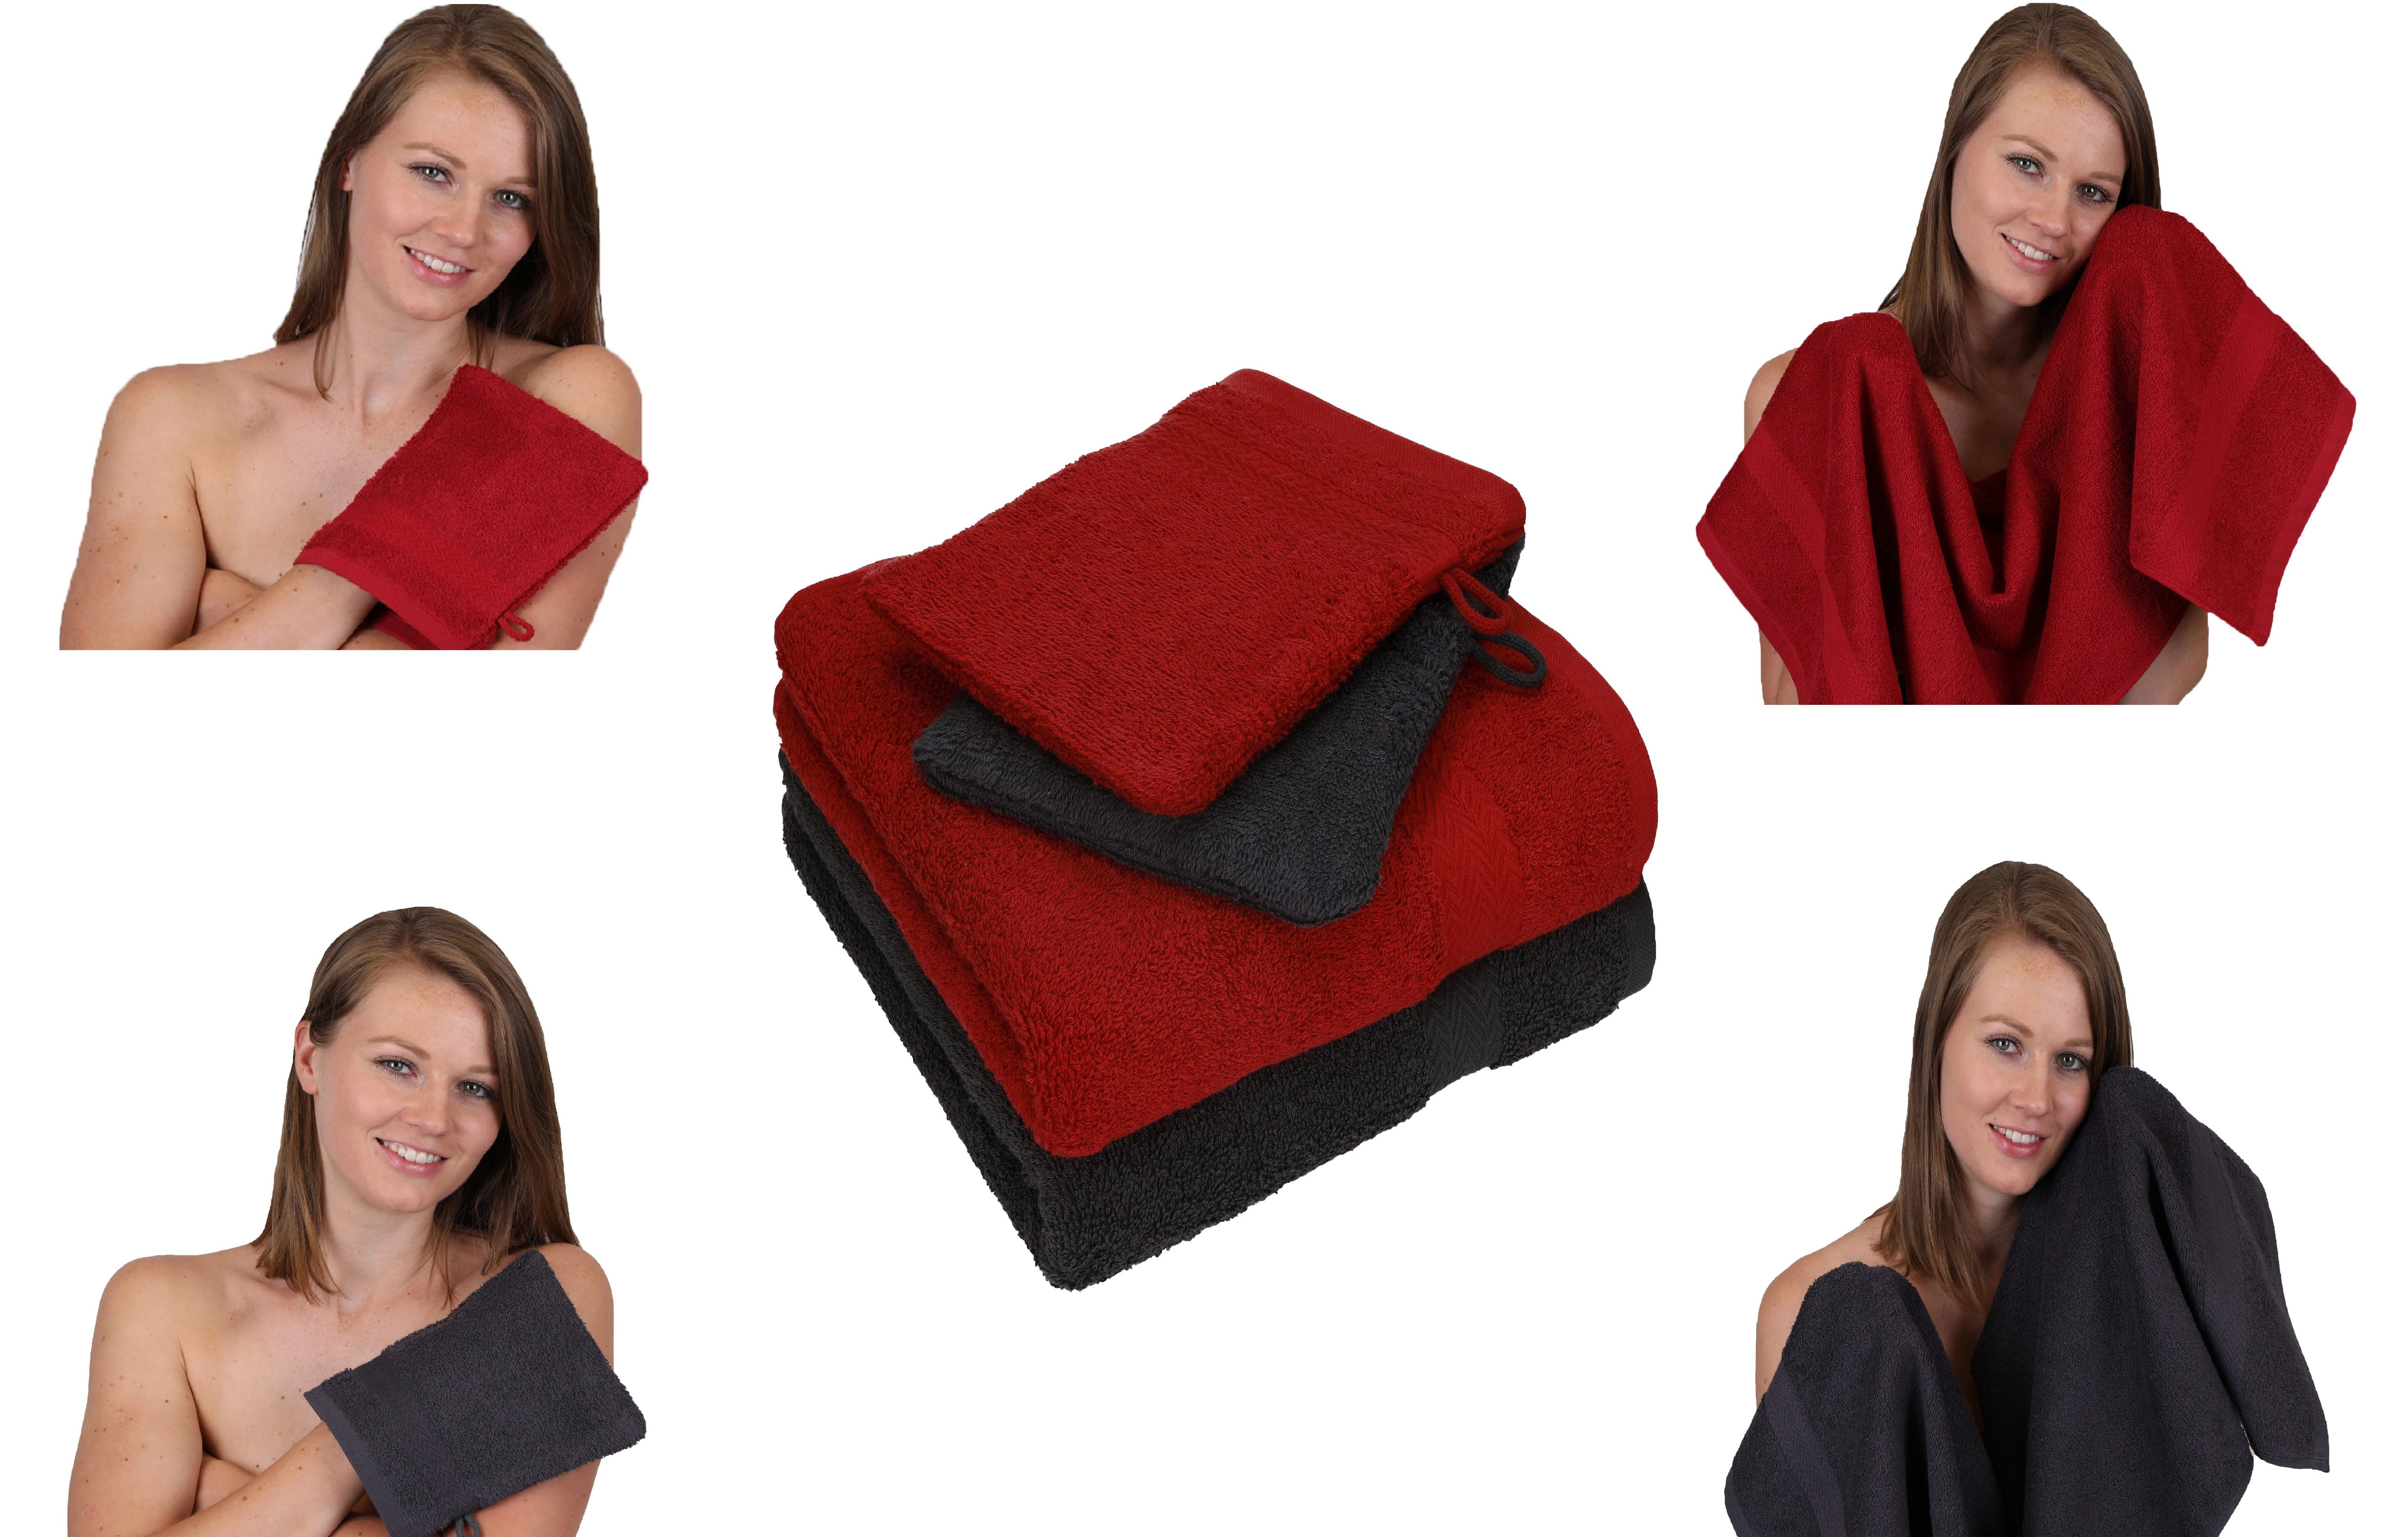 Betz Handtuch Set 4 tlg. Baumwolle Handtuch graphit - Baumwolle HAPPY 100% Pack grau 100% Handtücher dunkelrot Waschhandschuhe, 2 Set 2